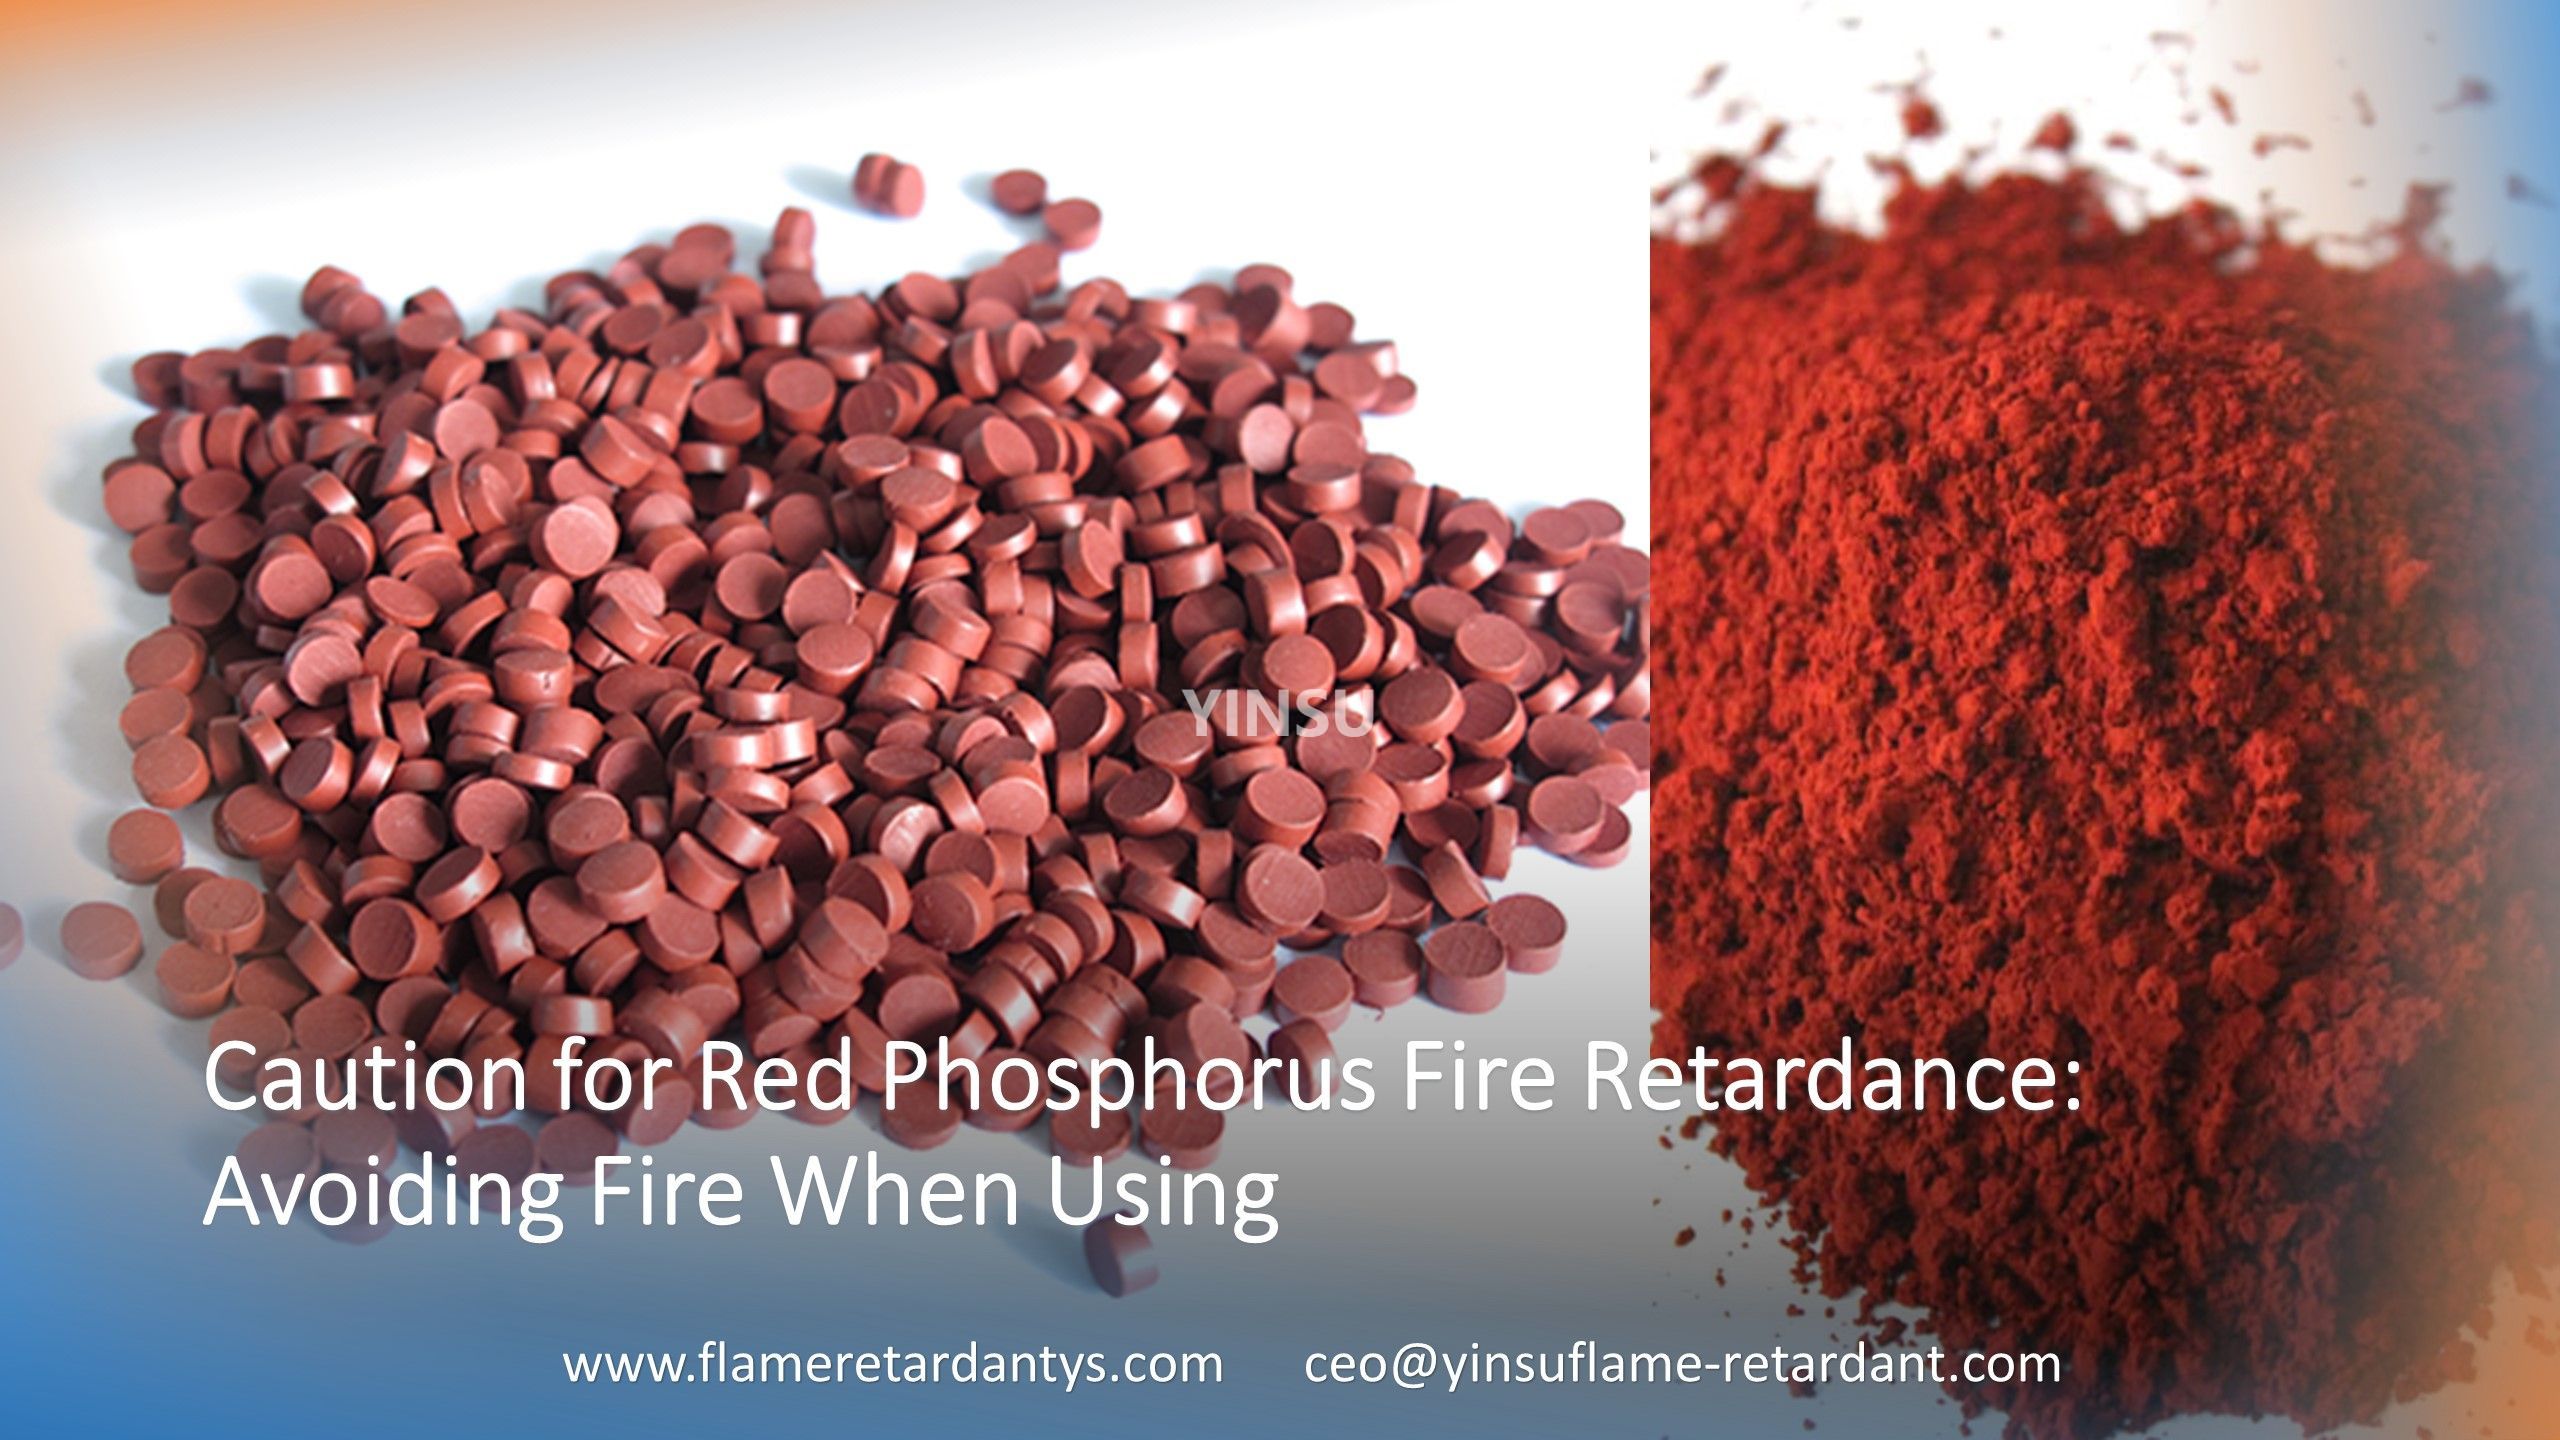 Меры предосторожности в отношении огнестойкости красного фосфора. Как избежать возгорания при использовании